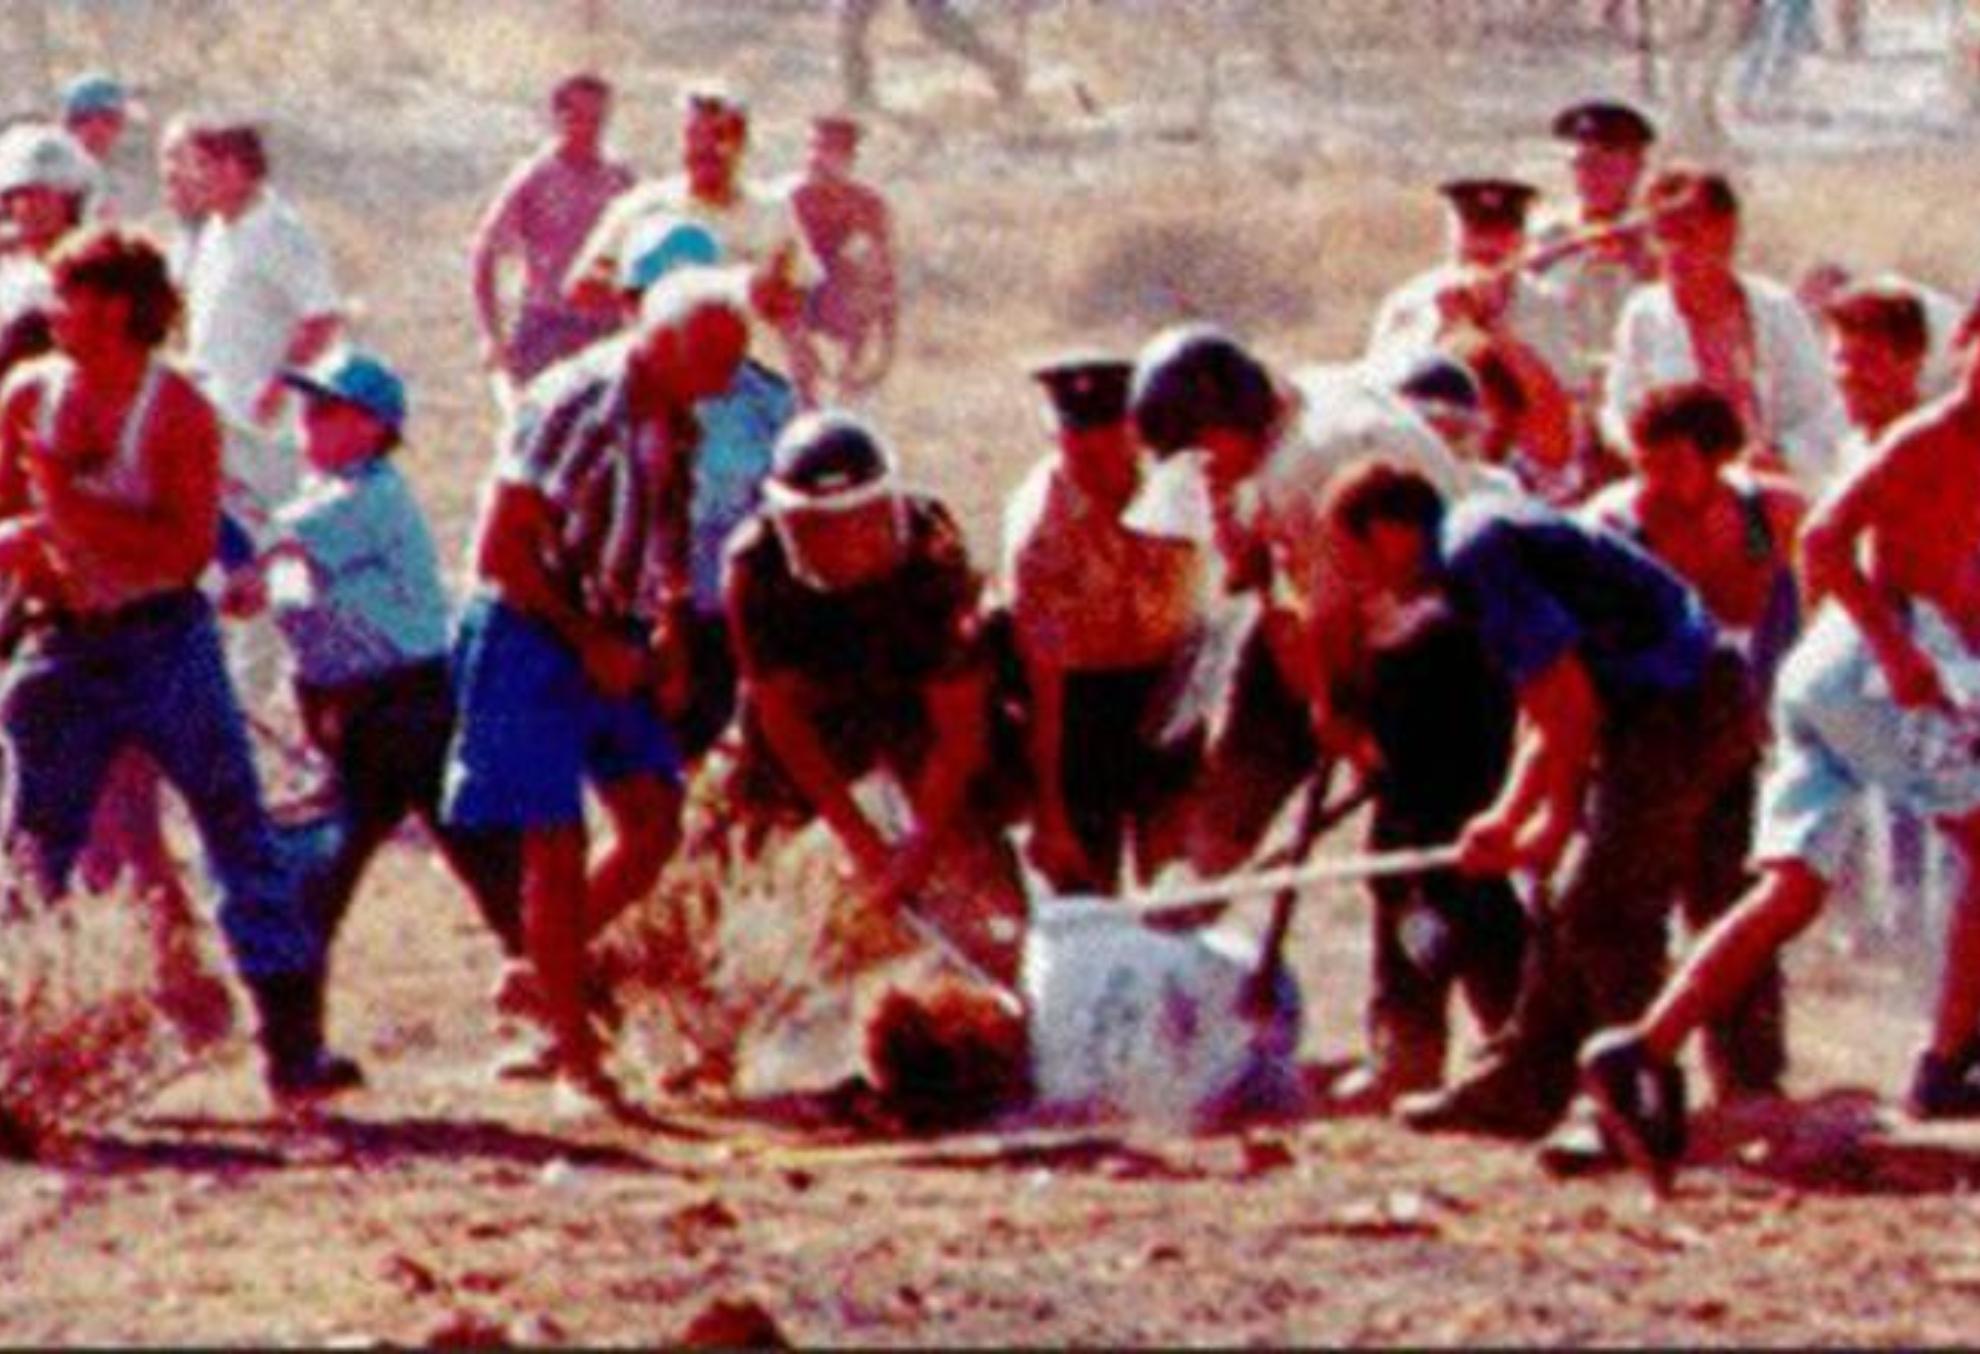 Σολωμός Σολωμού – Τάσος Ισαάκ: Η ιστορία των άγριων δολοφονιών των δύο Κυπρίων ηρώων 27 χρόνια μετά